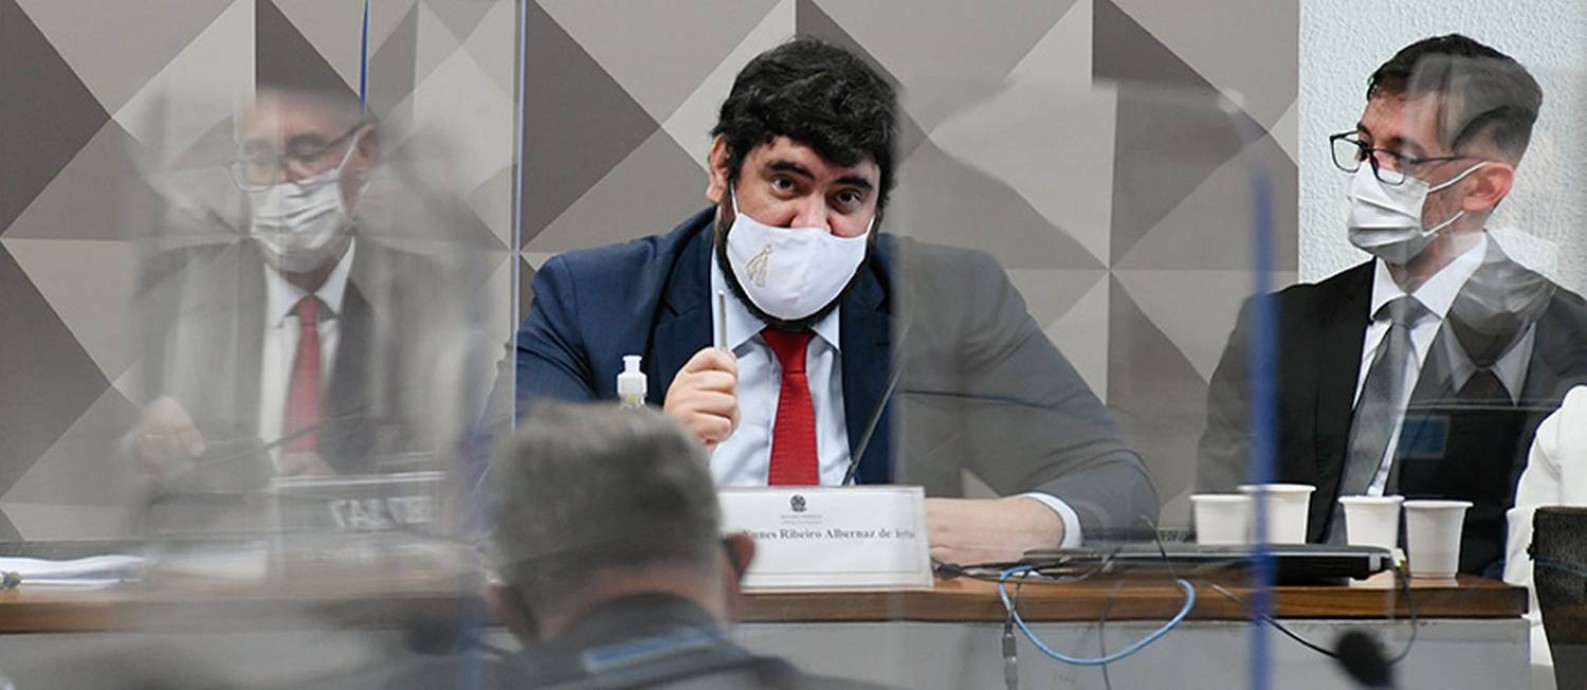 Empresário Marconny Faria, apontado como lobista da Precisa Medicamentos, presta depoimento à CPI da Covid Foto: Roque de Sá / Agência Senado